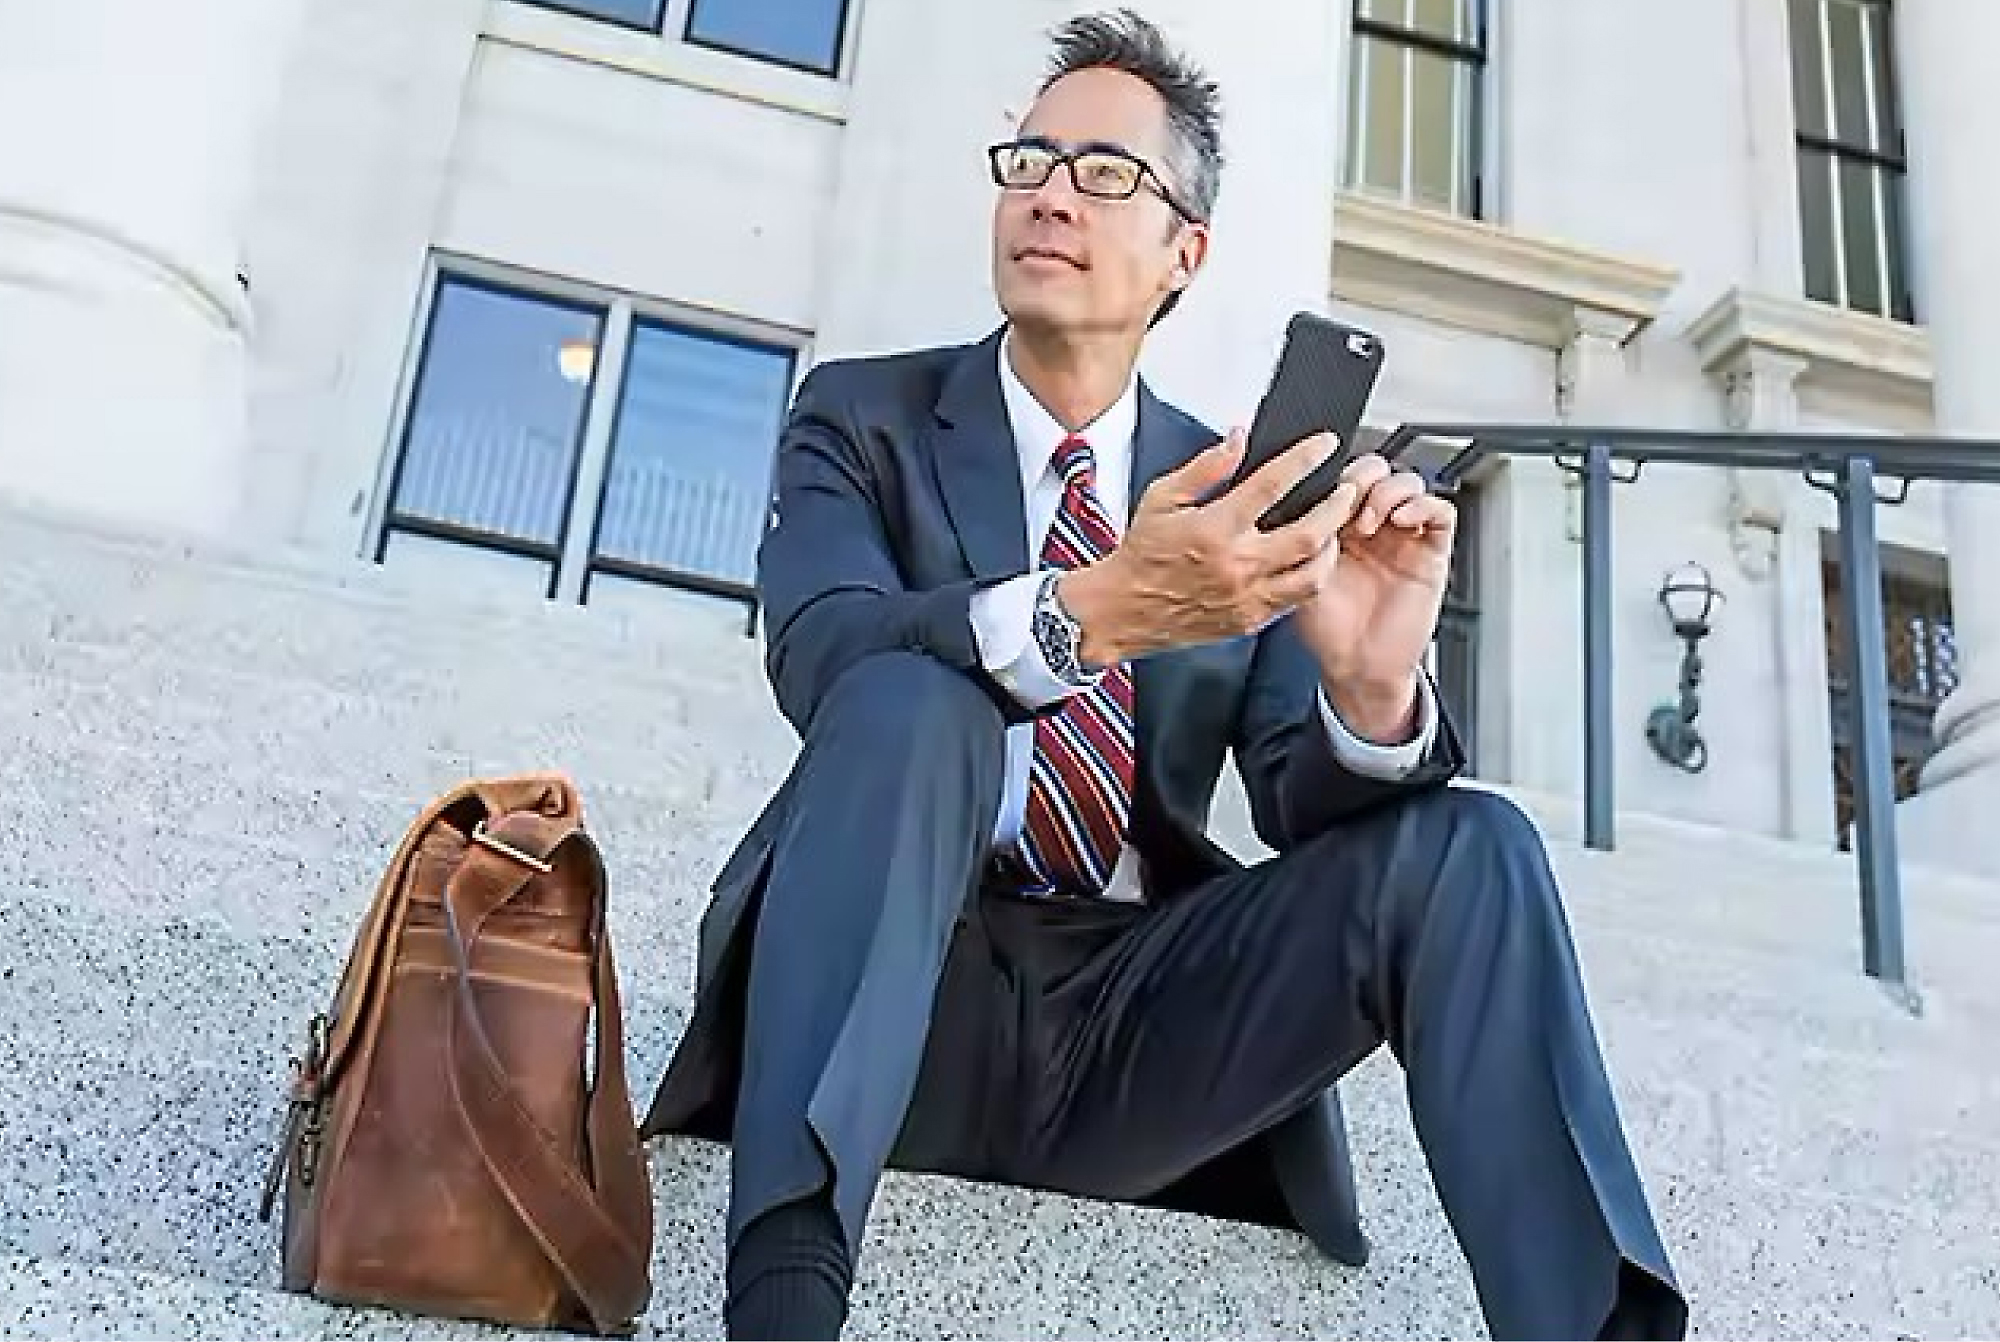 Biznesmen w garniturze i okularach siedzi na schodach na zewnątrz budynku i używa smartfon z na schemacie przed budynkiem, używając smartfonu, z torbą skórzaną stojącą obok niego.